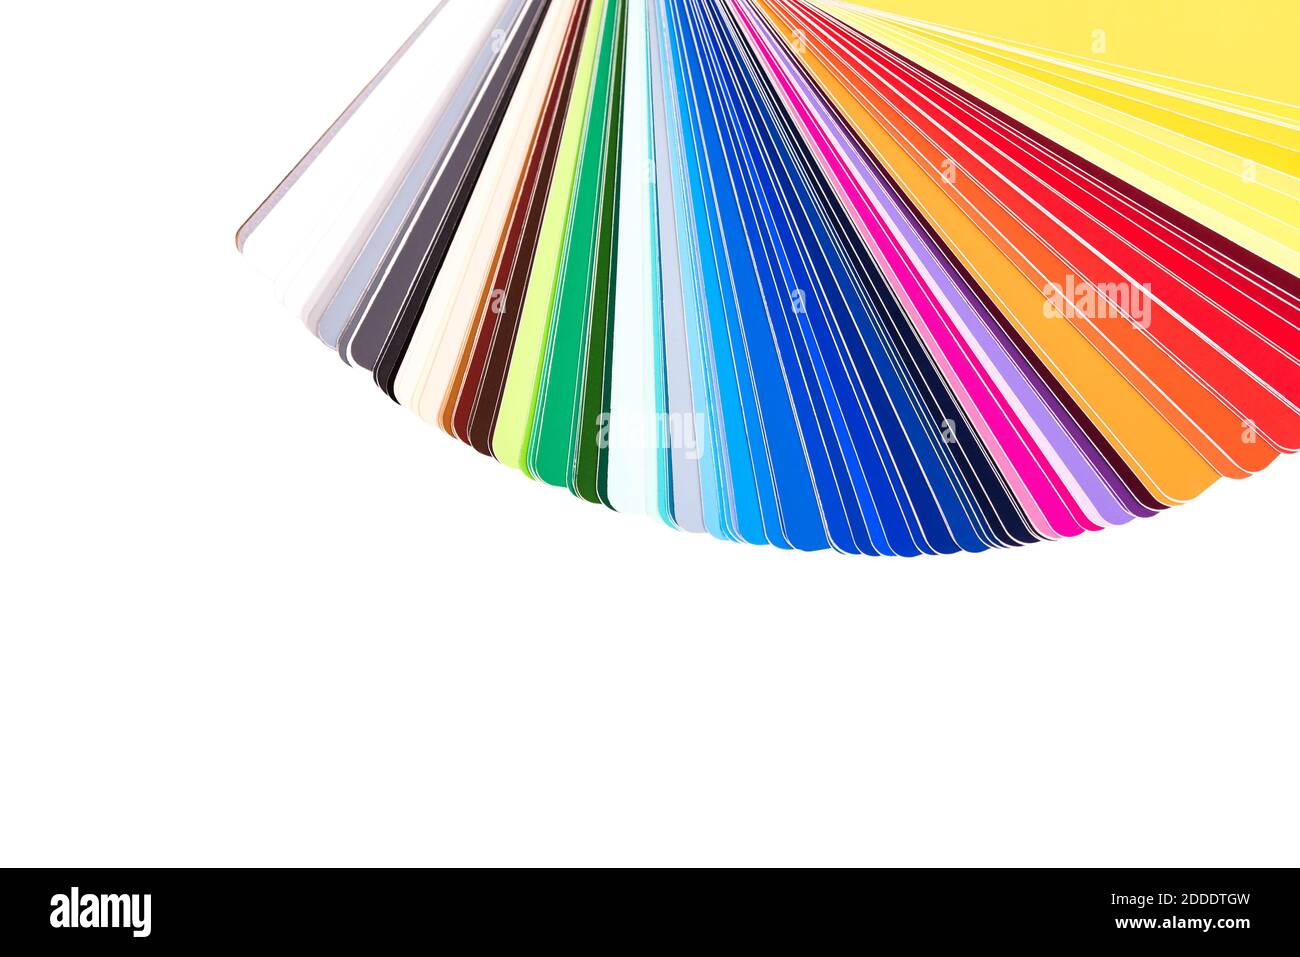 Paleta de colores, guía de muestras de pintura, catálogo de colores aislado sobre fondo blanco Foto de stock